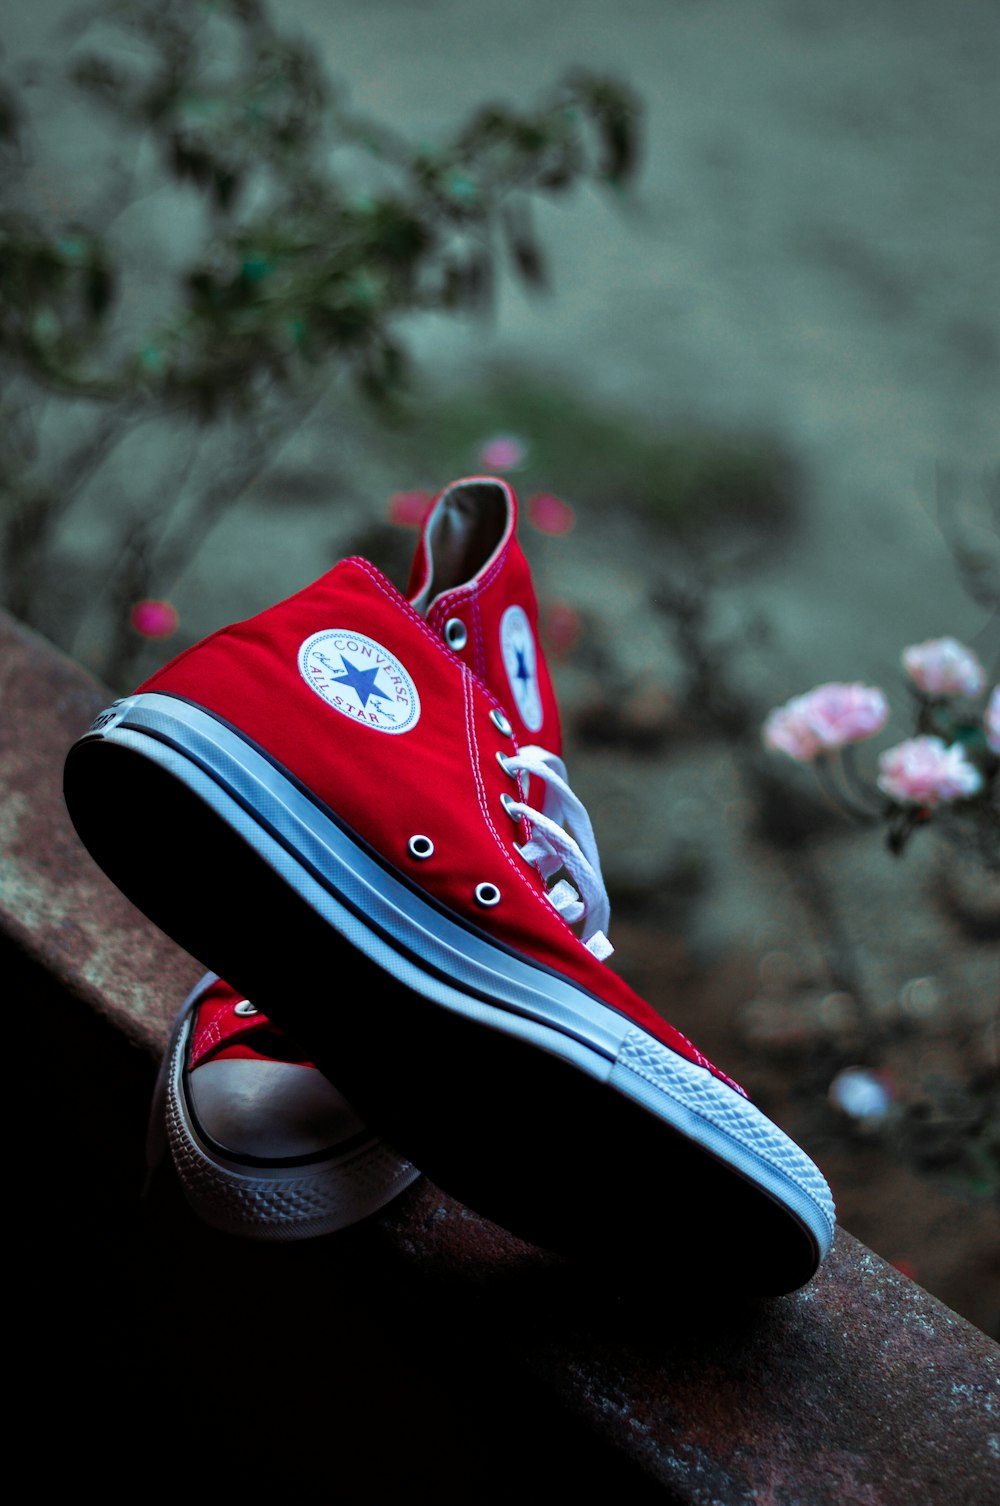 Foto Zapatillas altas rojas y negras converse all star – Imagen 50 mm  gratis en Unsplash